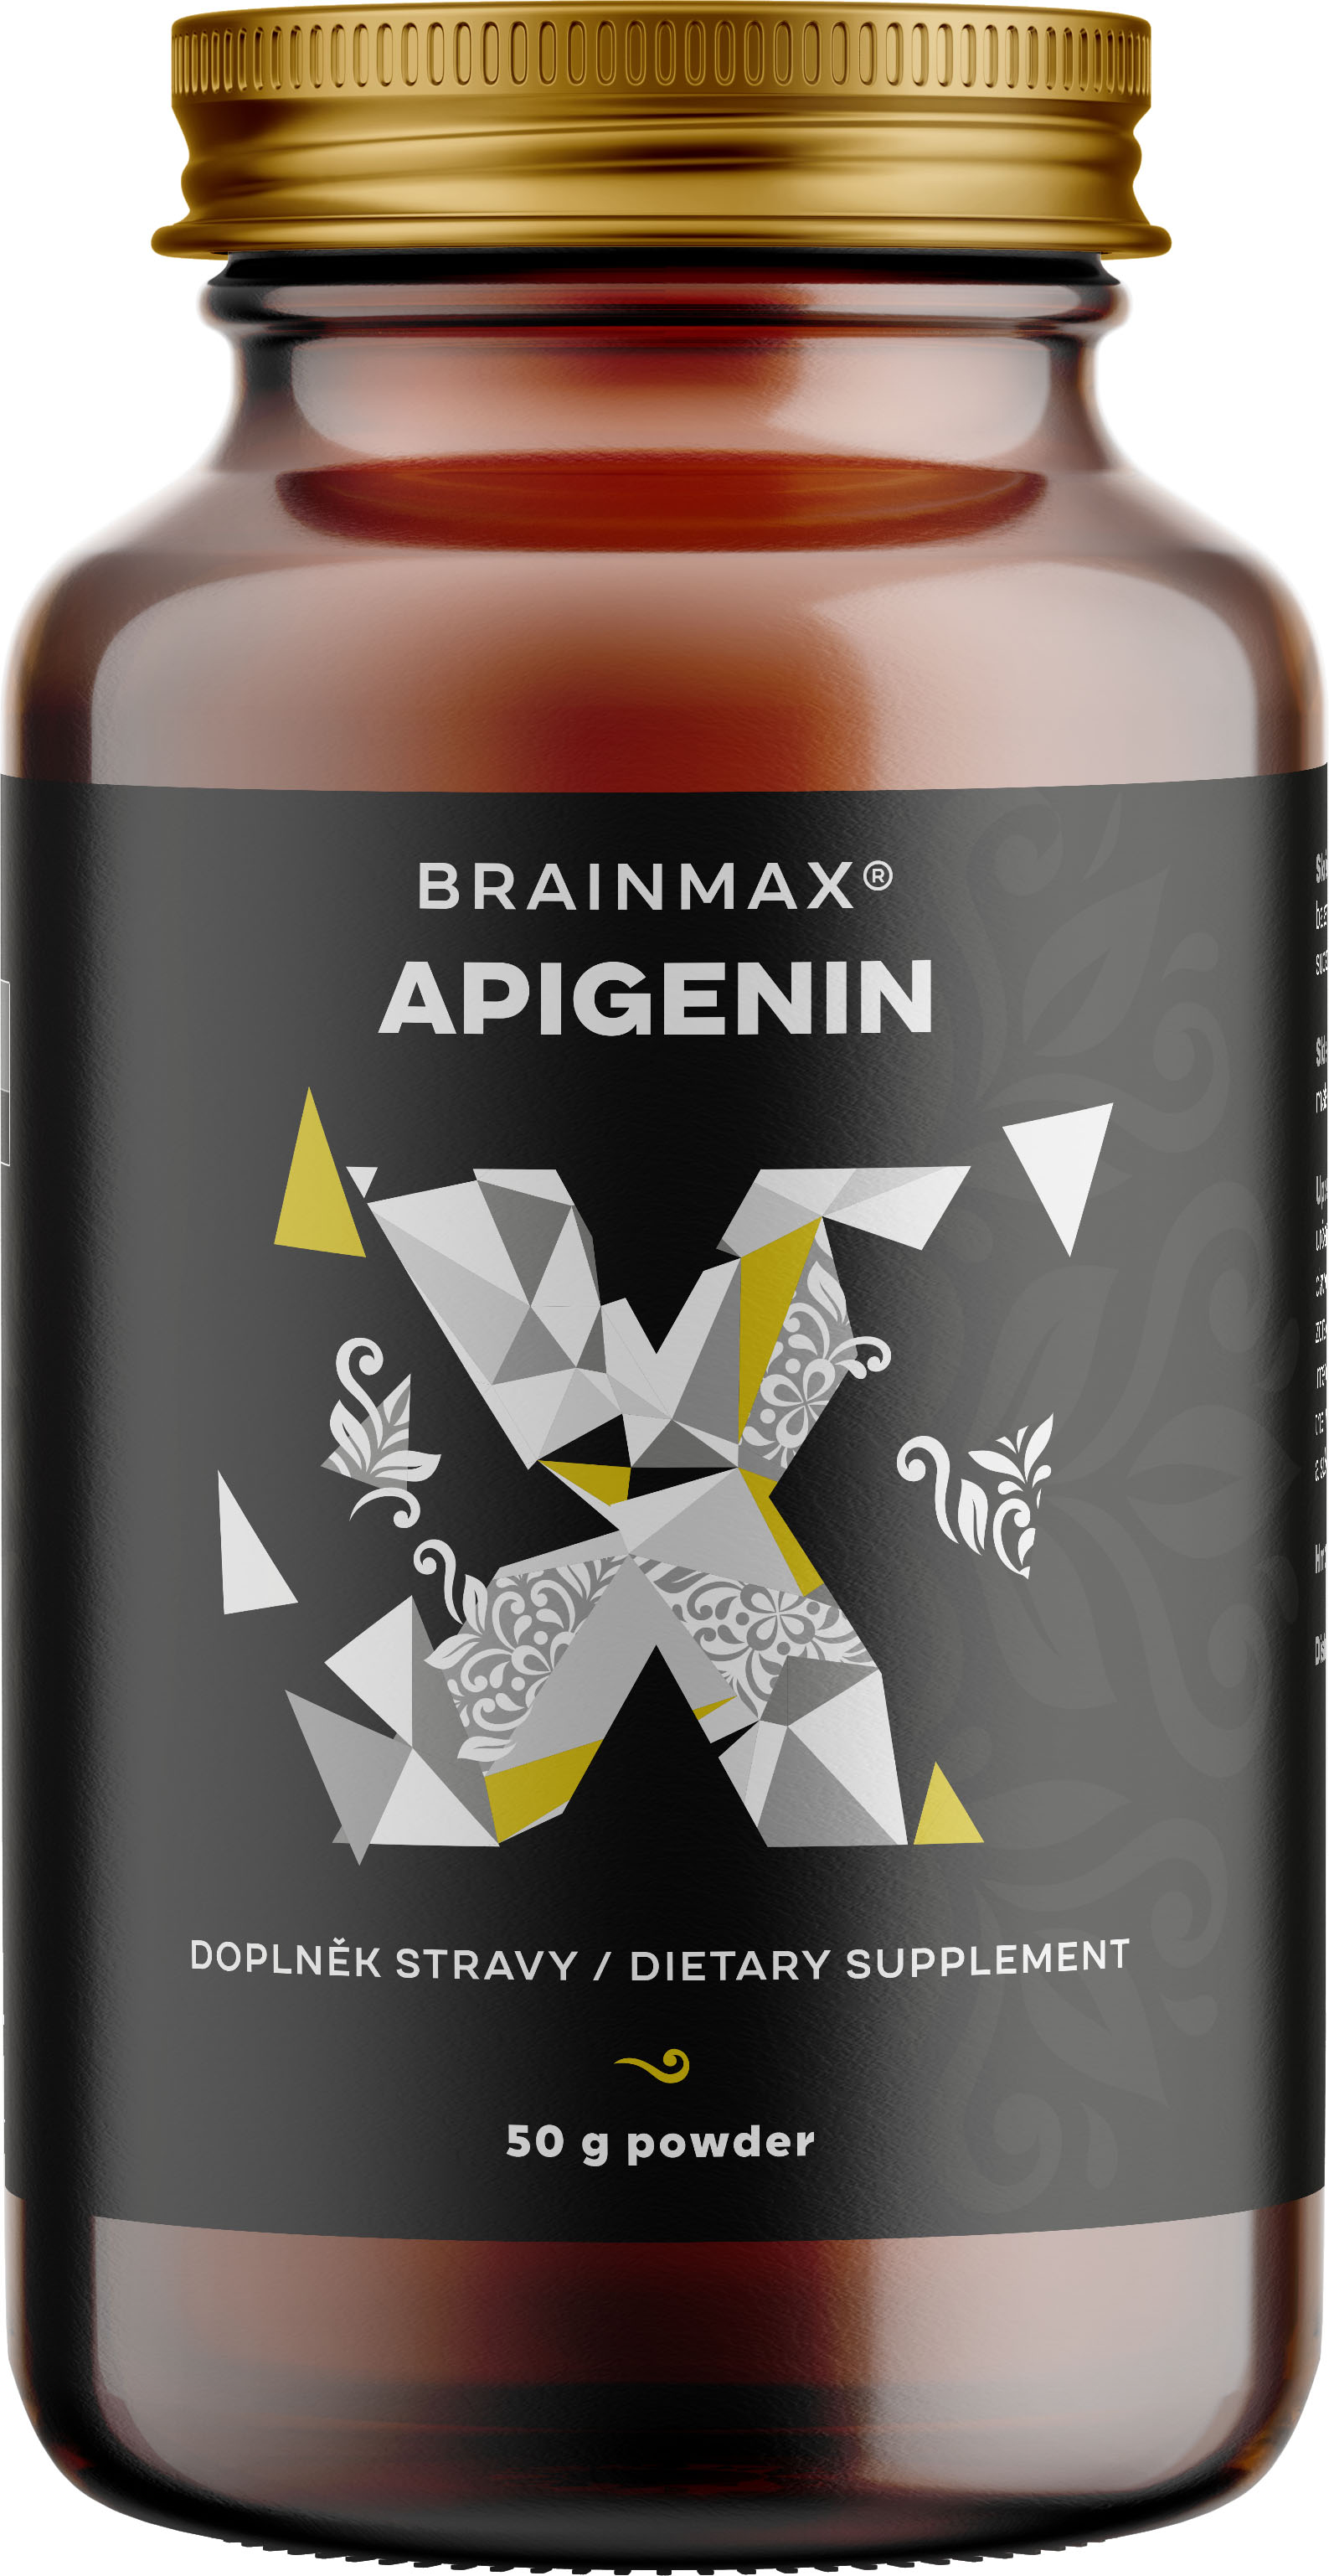 BrainMax Apigenin, Maximální Koncentrace 98%, 50 g Přírodní látka se zklidňujícími účinky, podpora kvalitního hlubokého spánku, doplněk stravy